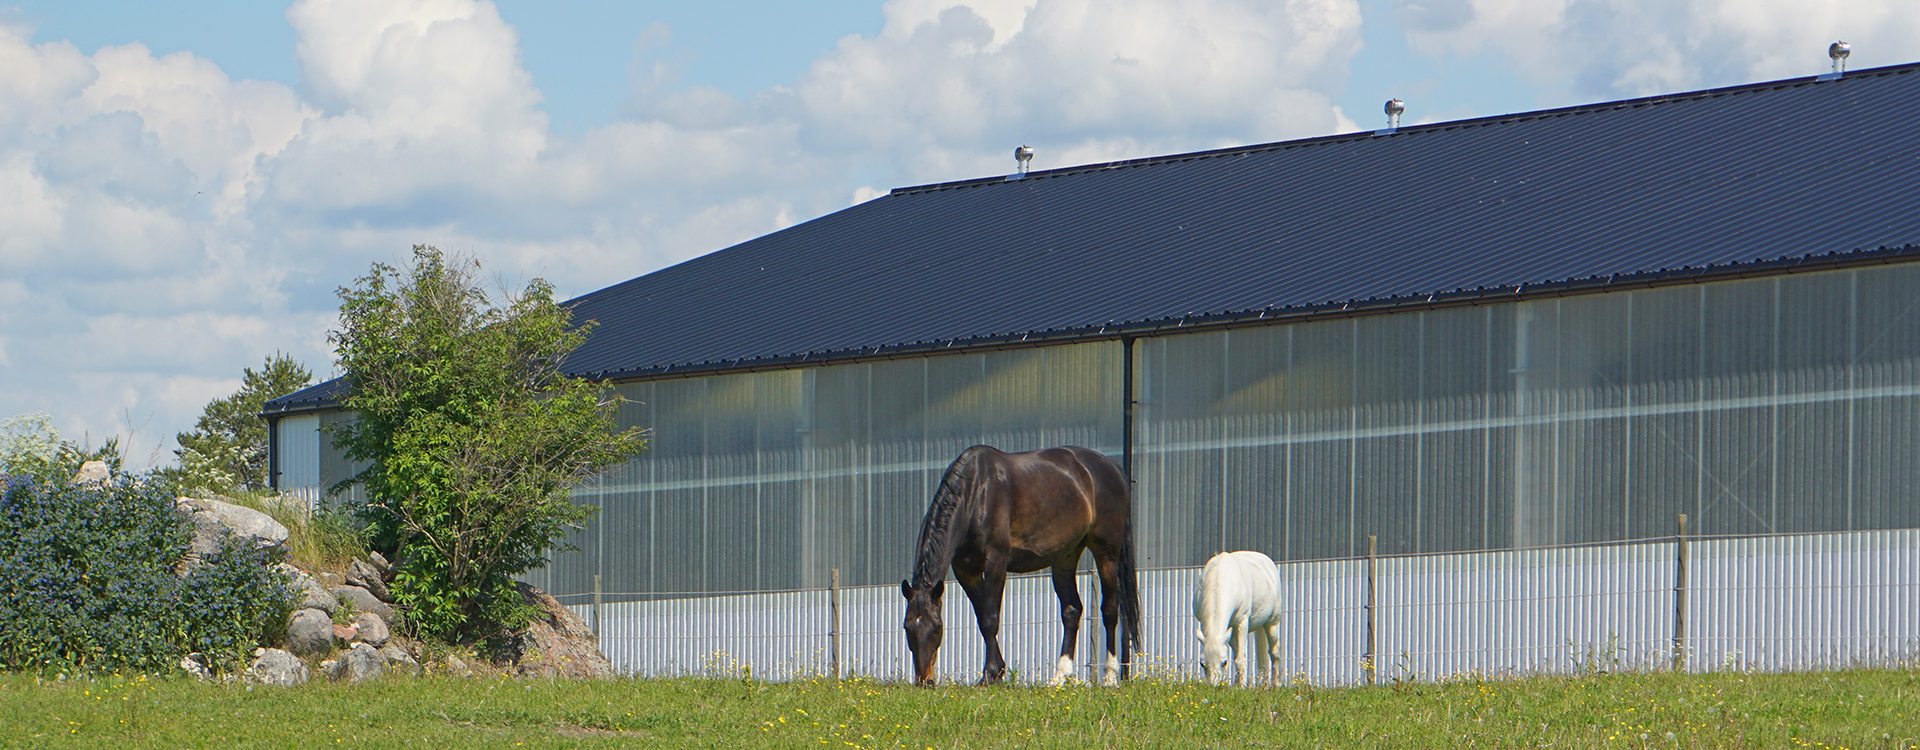 Betande hästar med ridhus i bakgrunden